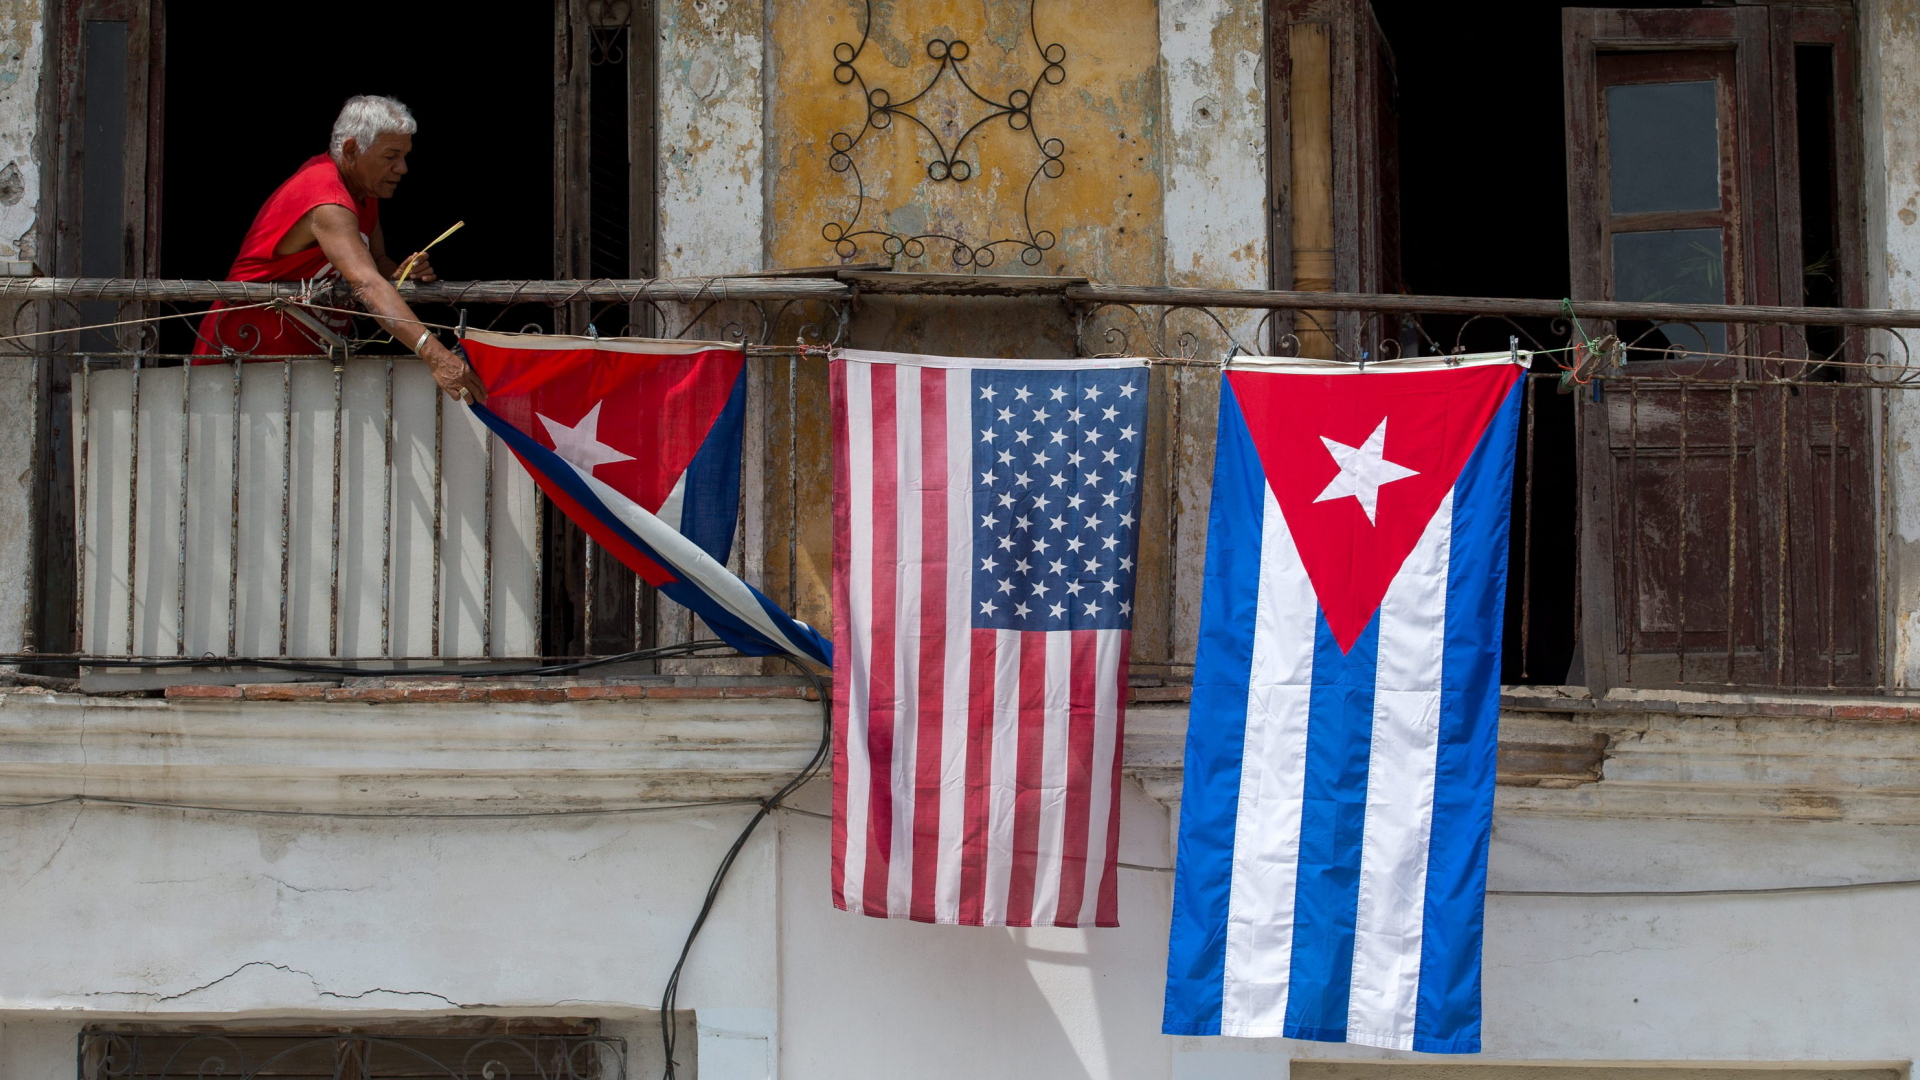 Kubanische und US-Flaggen hängen an einem Balkon.